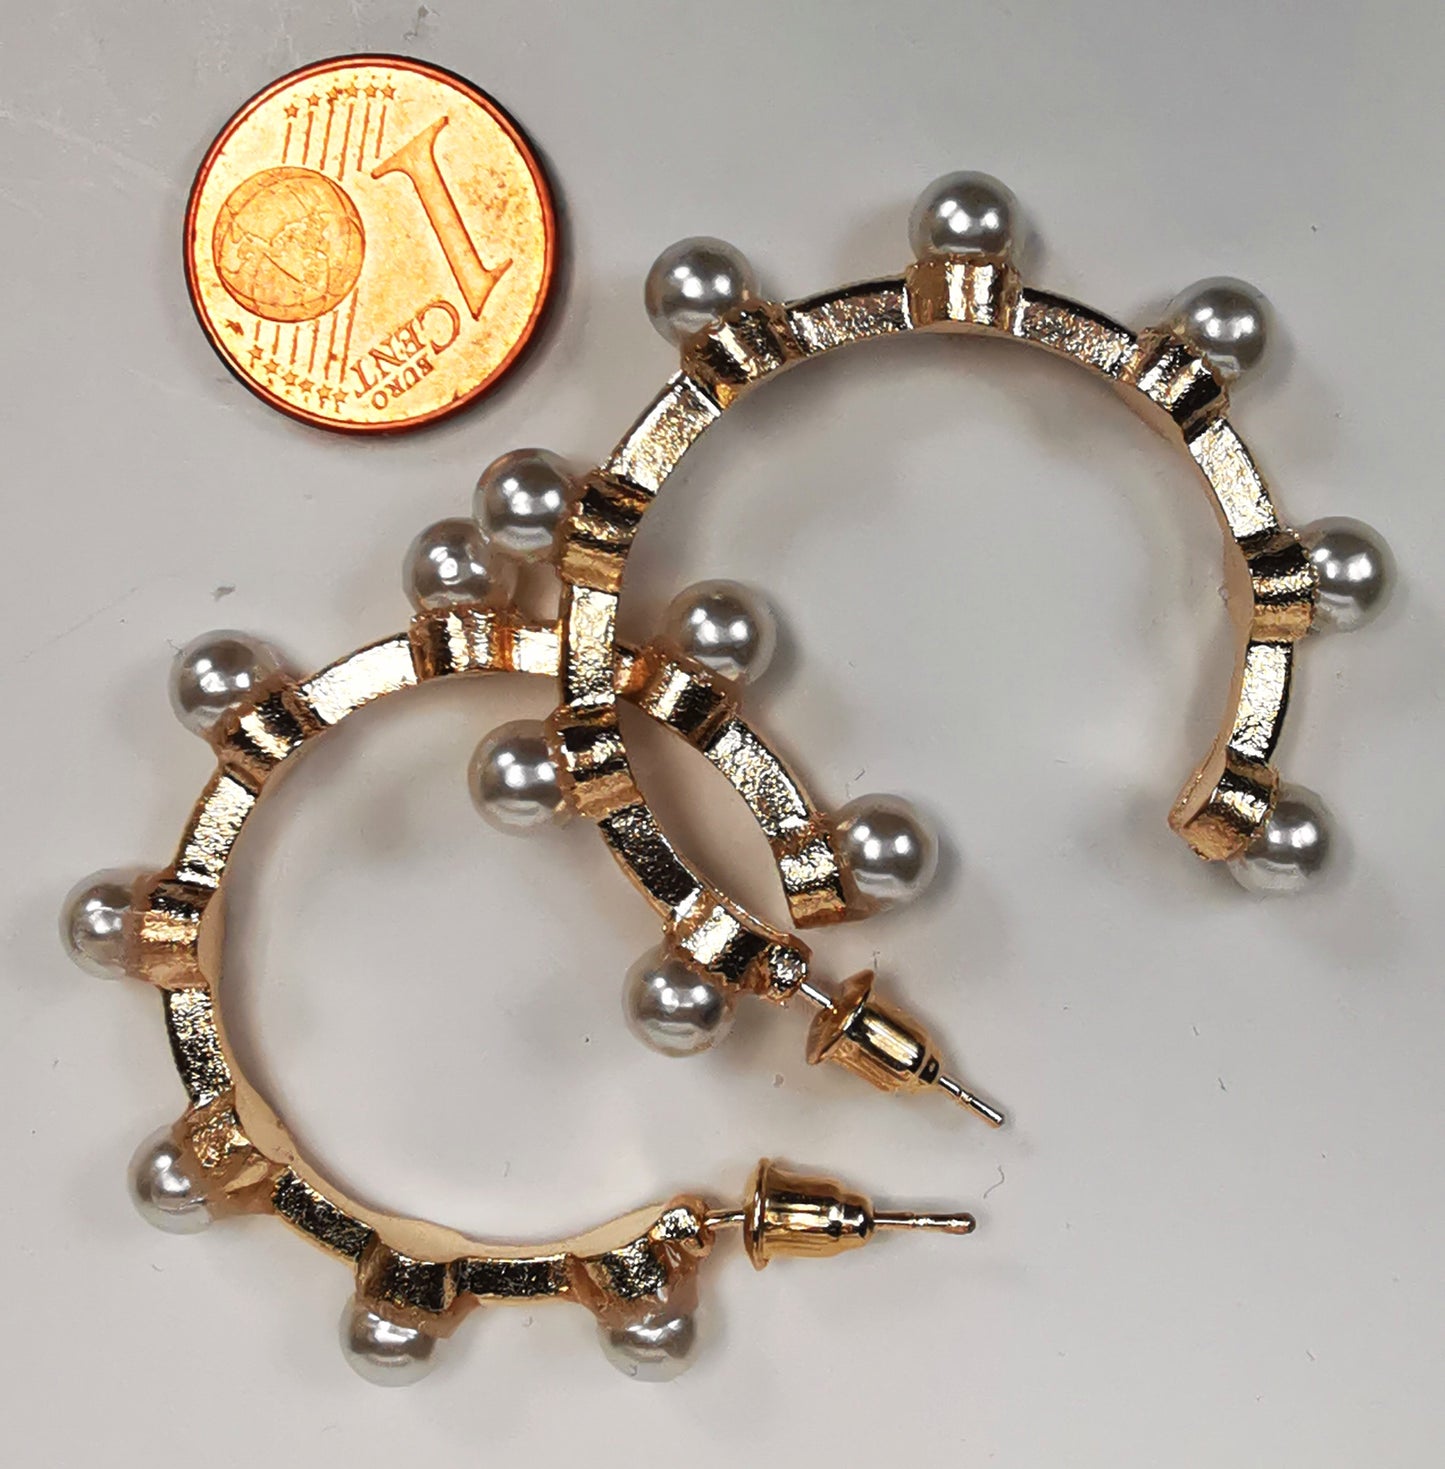 Boucles d'oreilles créoles fantaisie, en alliage doré, 35mm de diamètre, sur clous, avec 8 perles fantaisie sur la périphérie. Présentées l'une à coté de l'autre, posées sur fond blanc à coté d'une pièce de 1 centime. Vue de dessus.